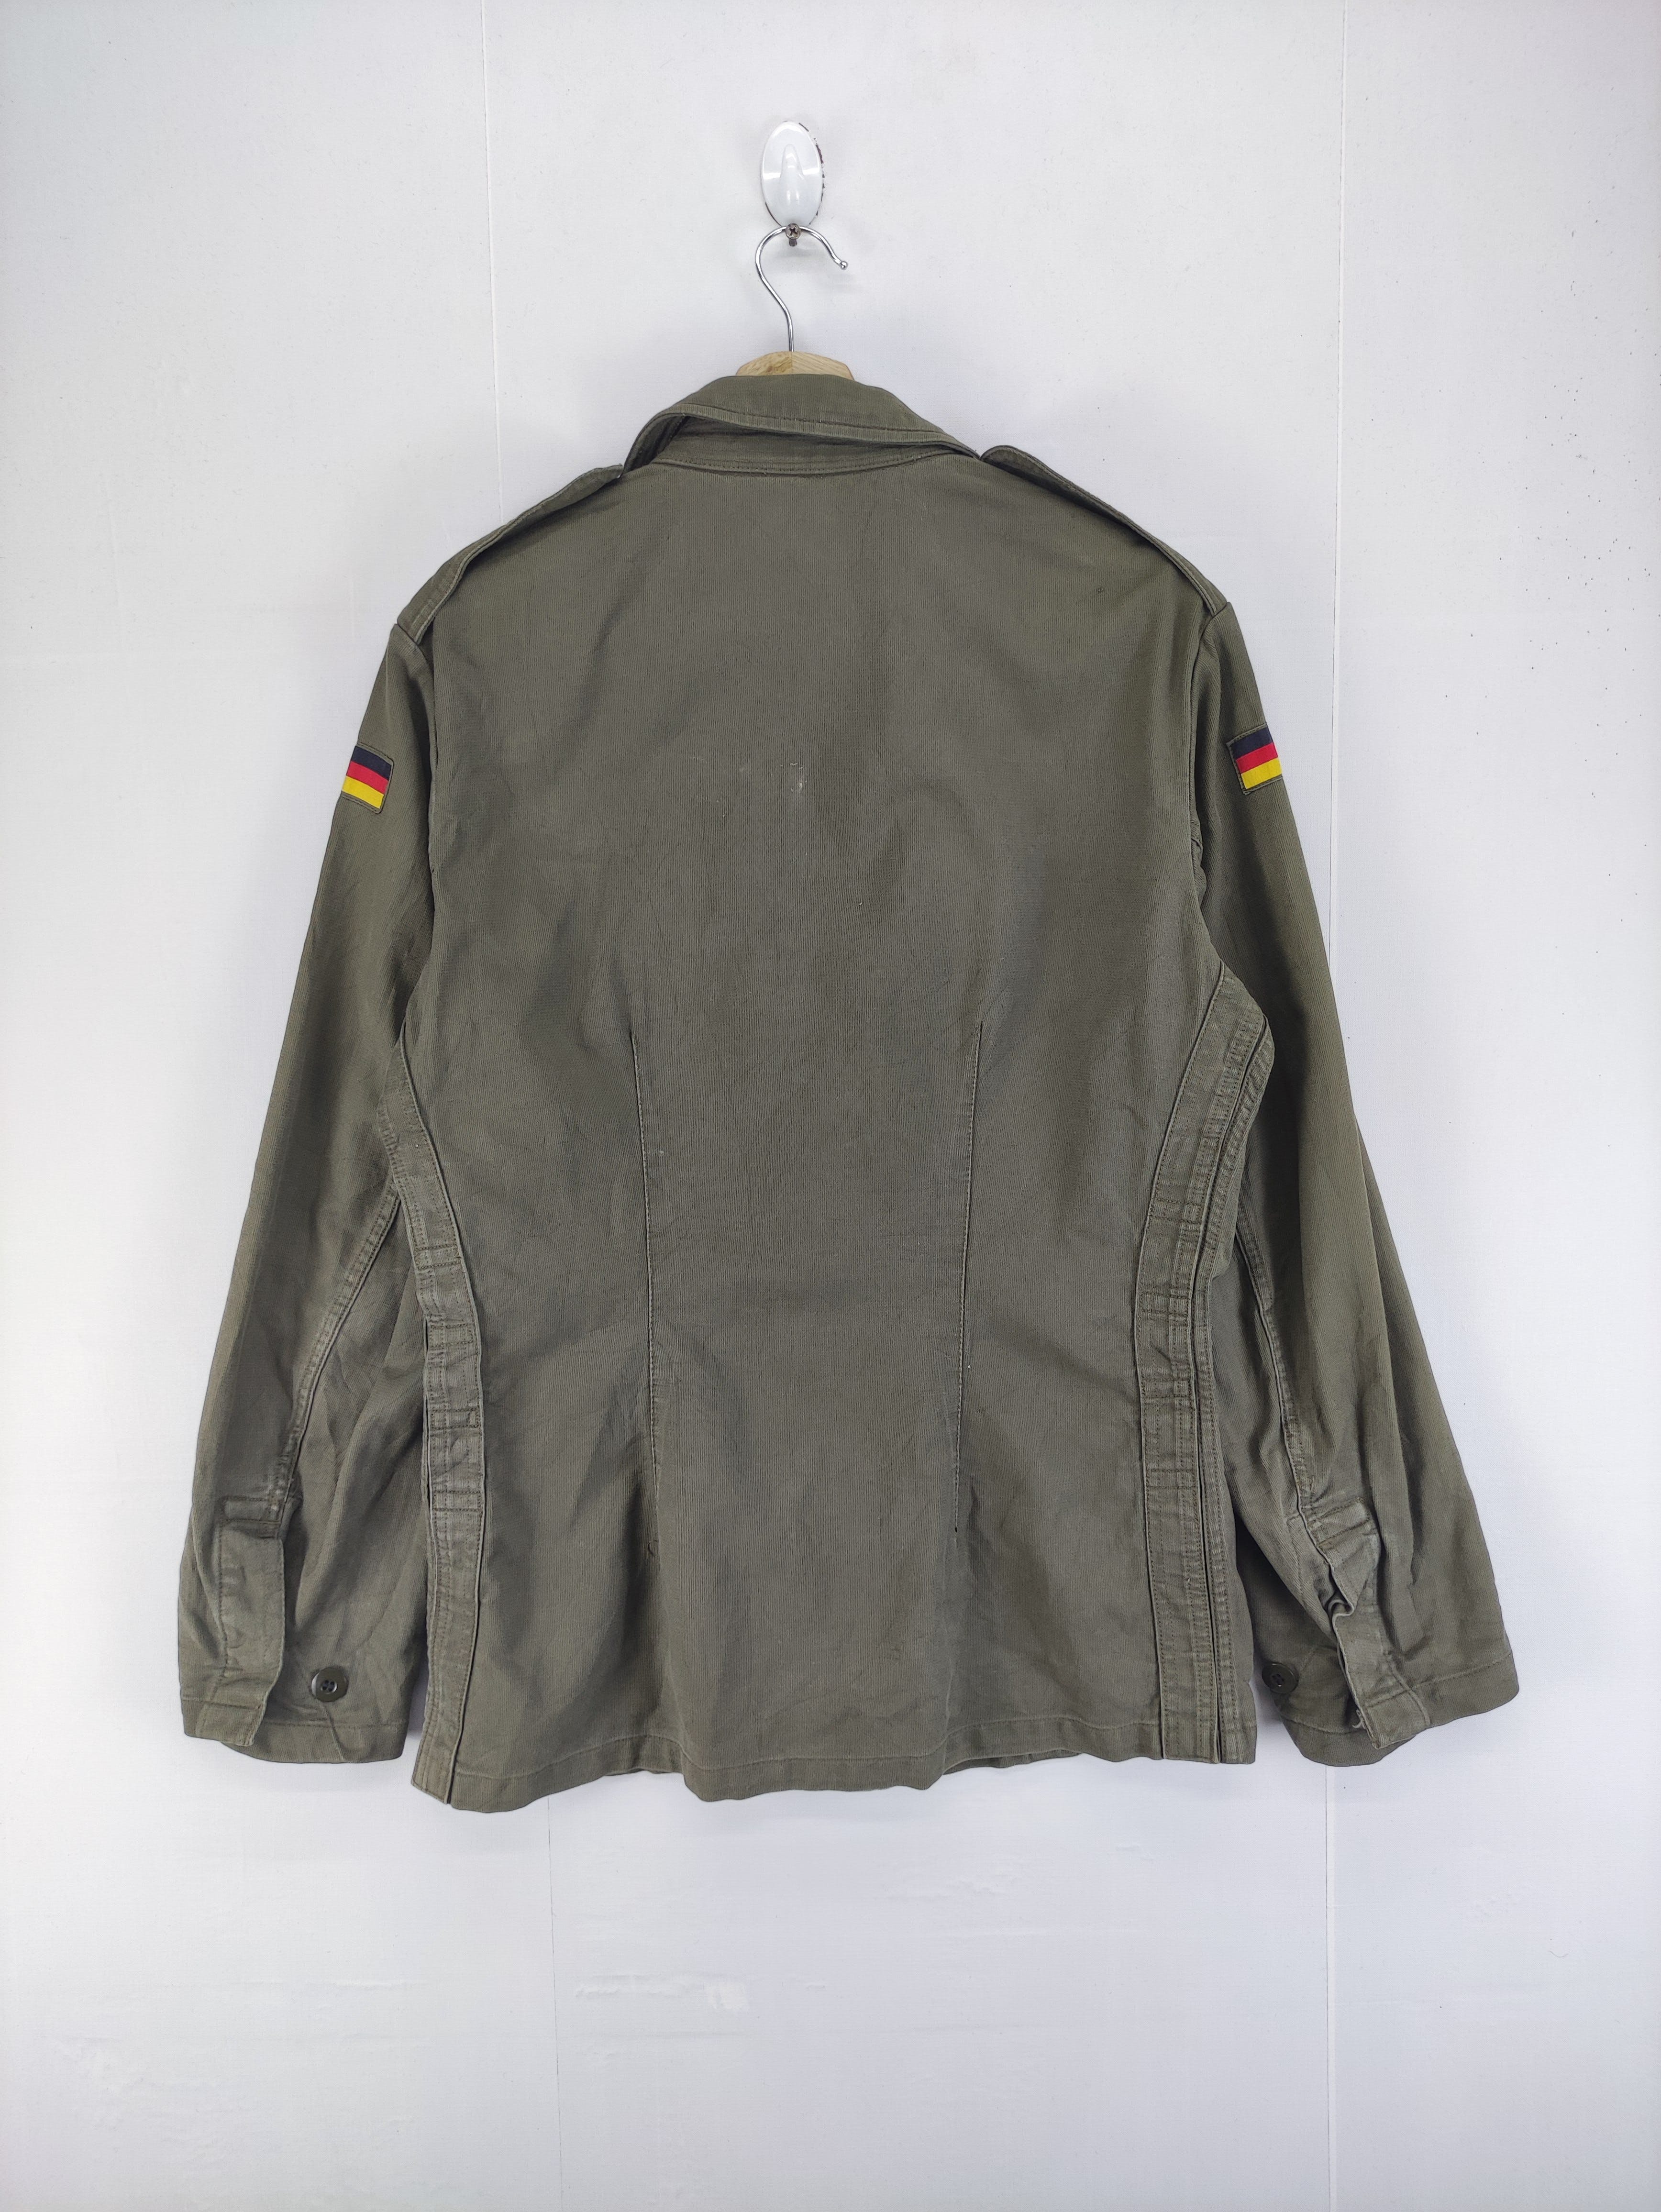 Vintage Germany Army OG Jacket - 6